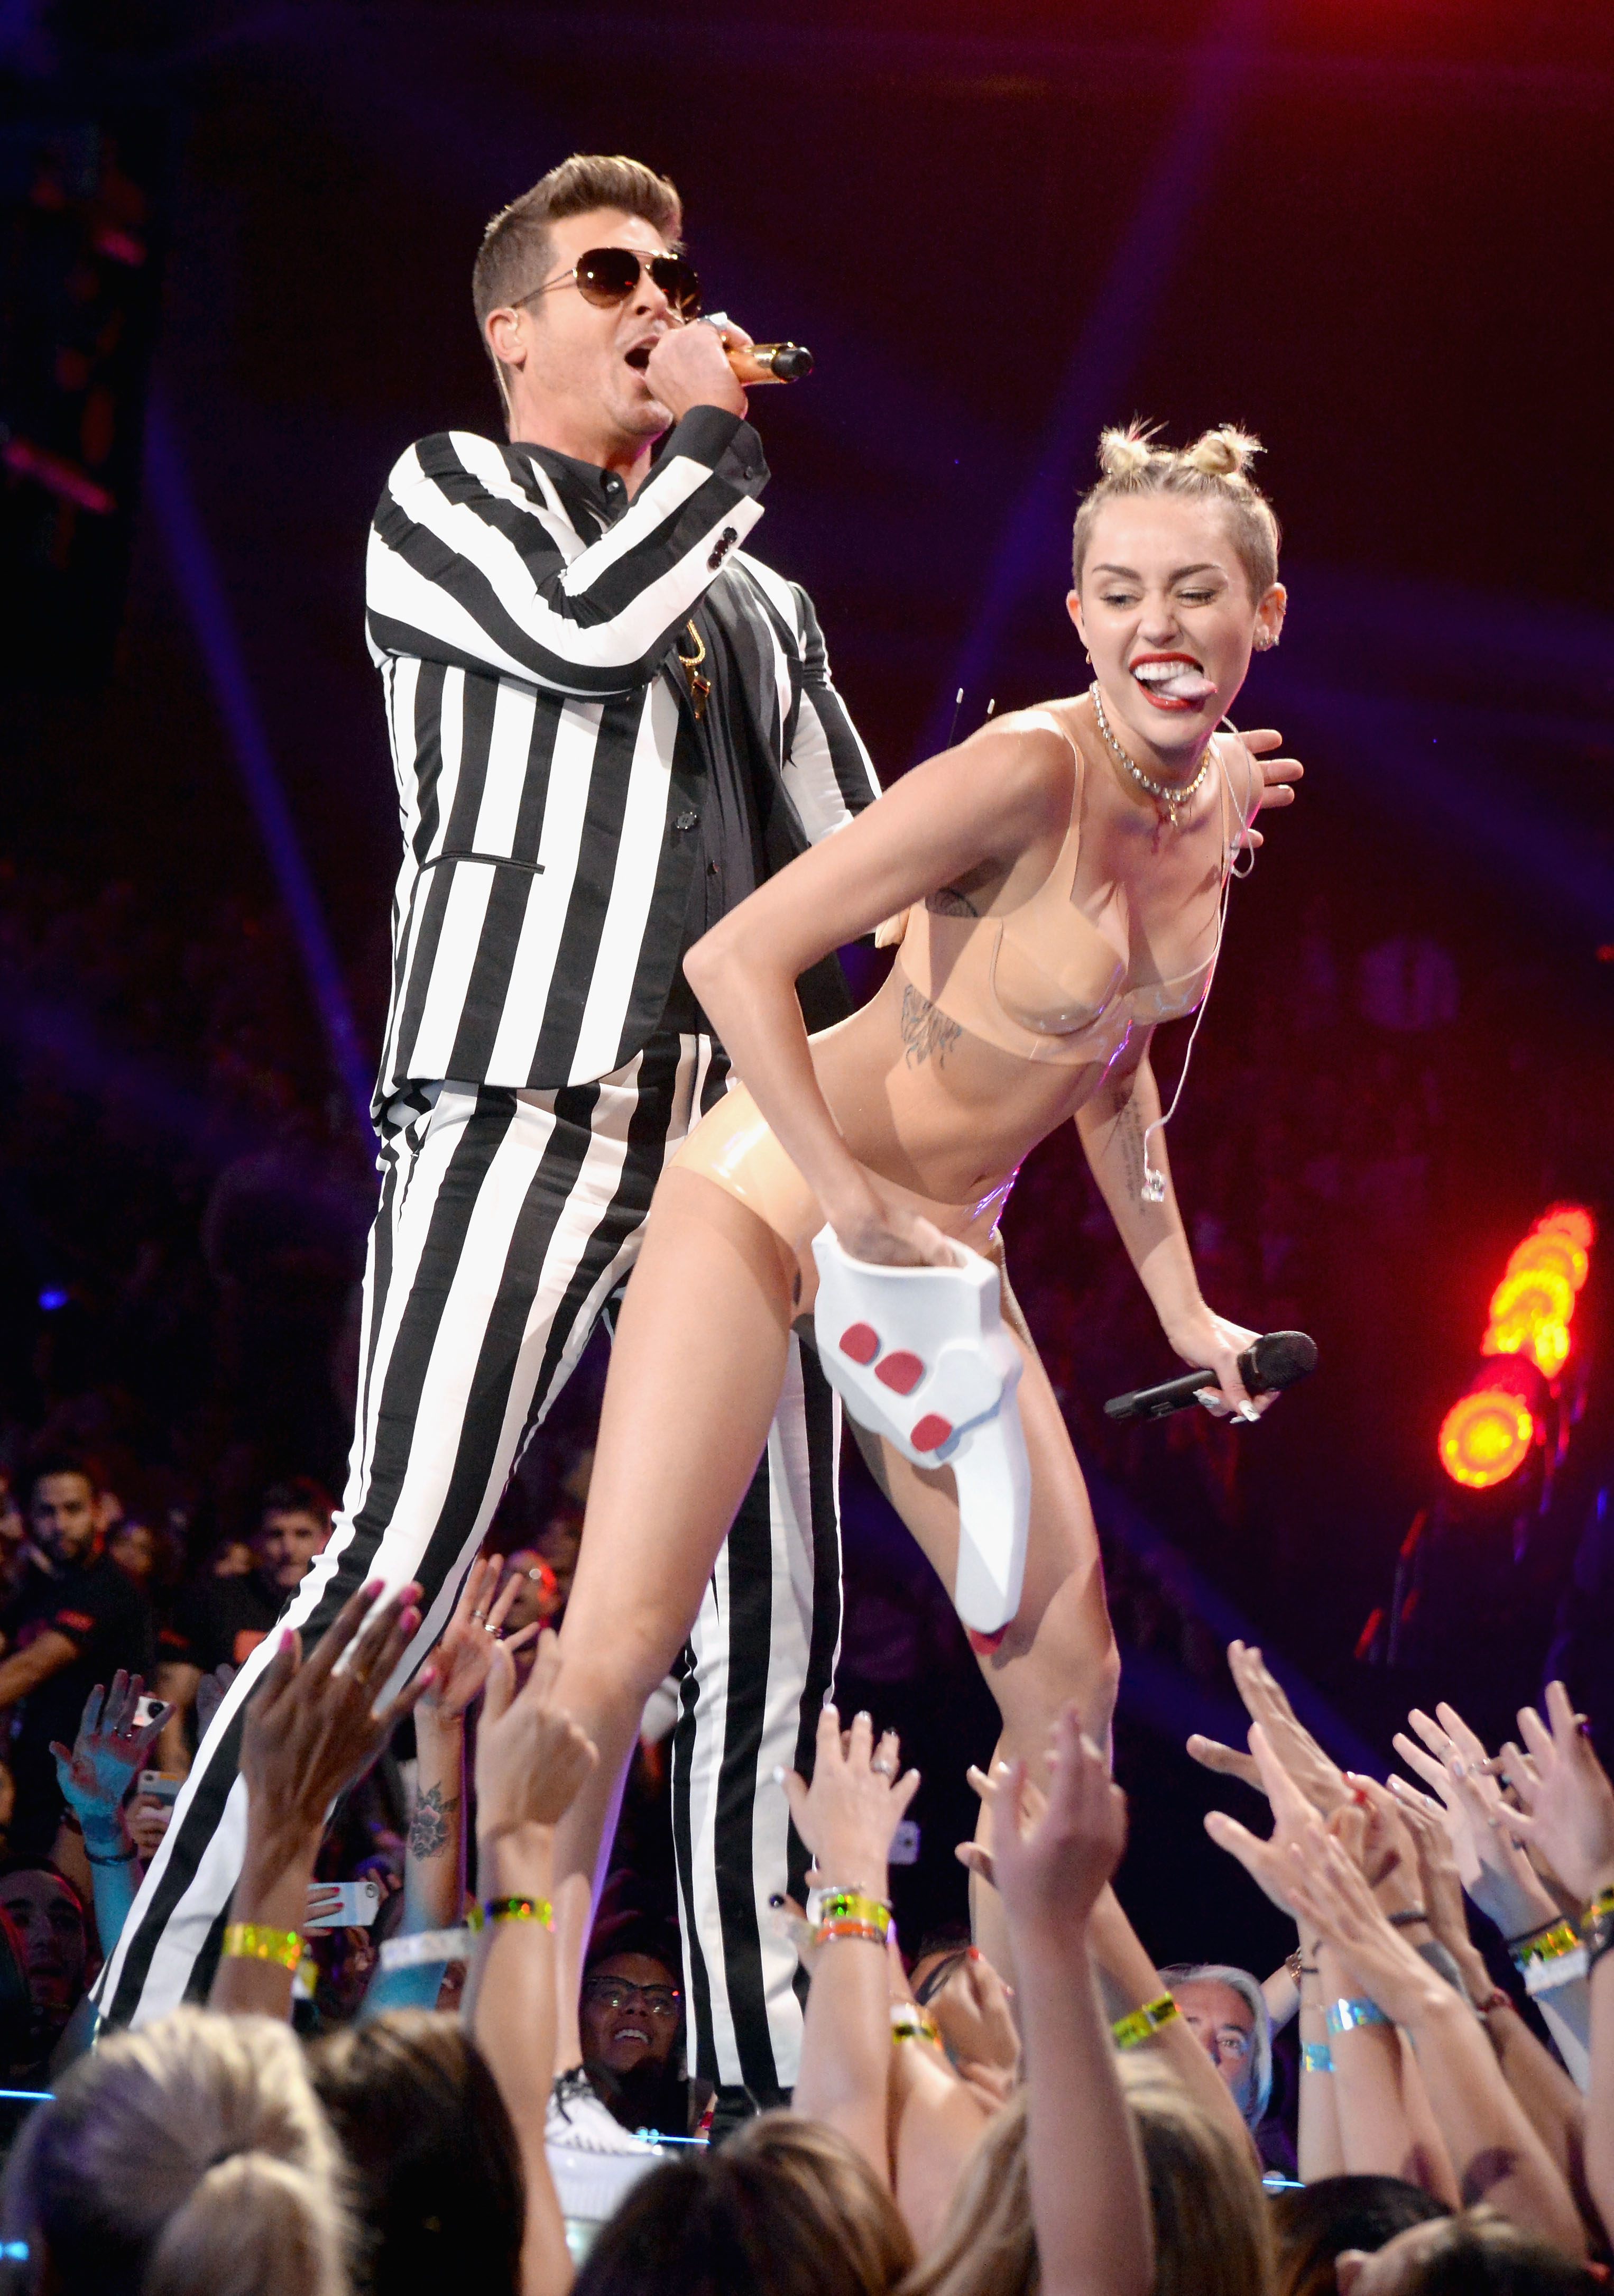 Miley twerking onstage with Robin behind her singing